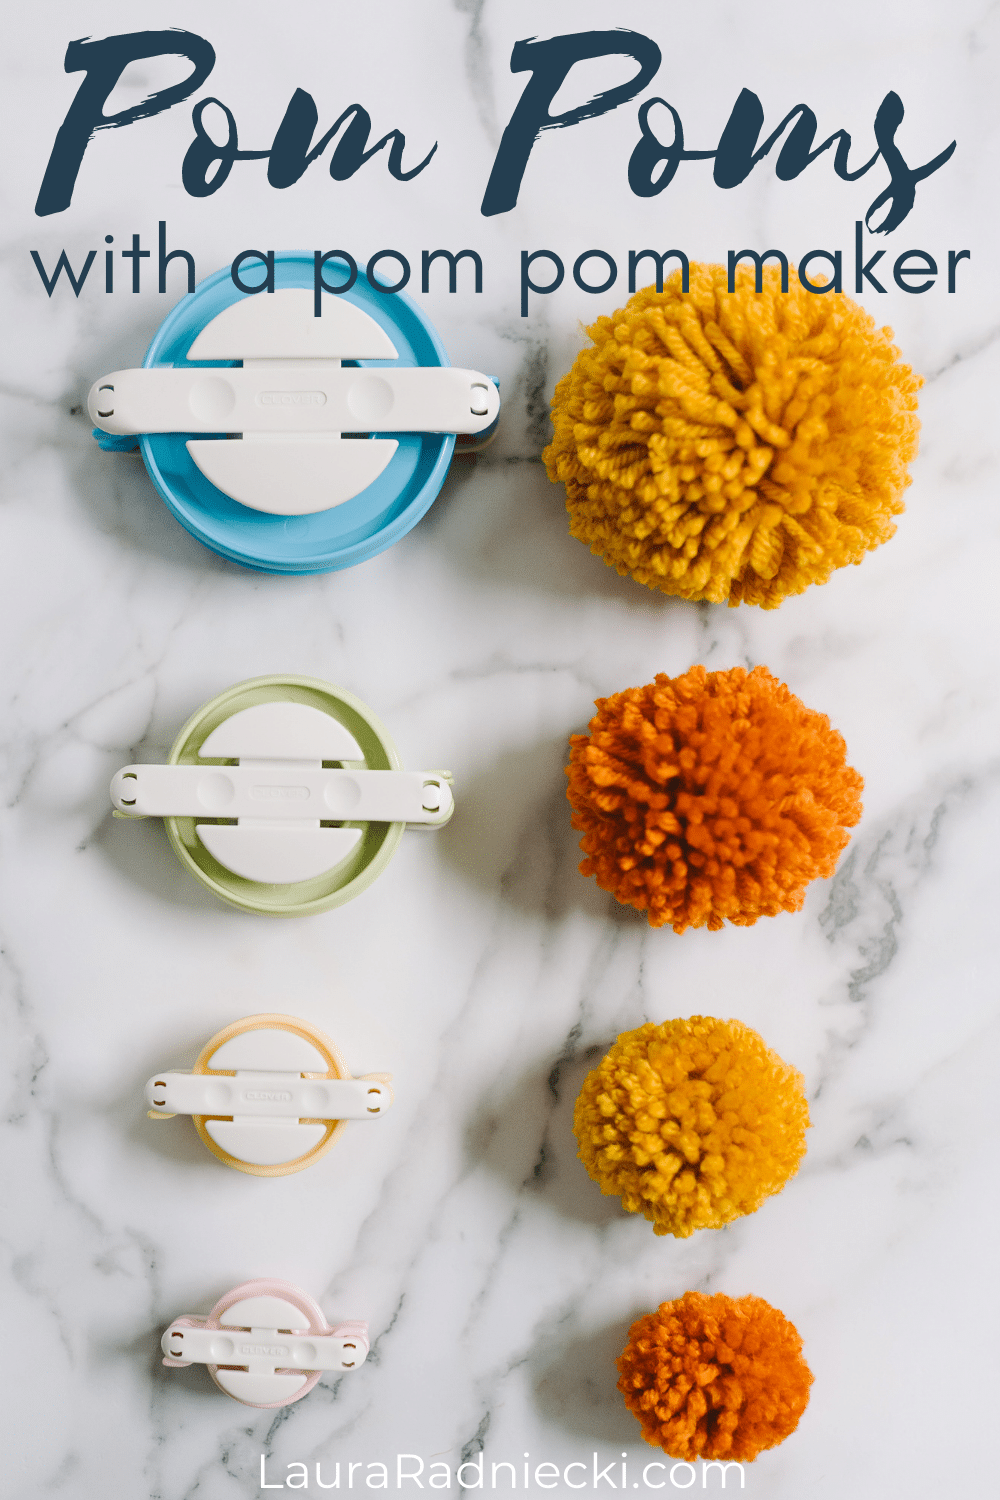 How to Use a Pom Pom Maker to Make Pom Poms